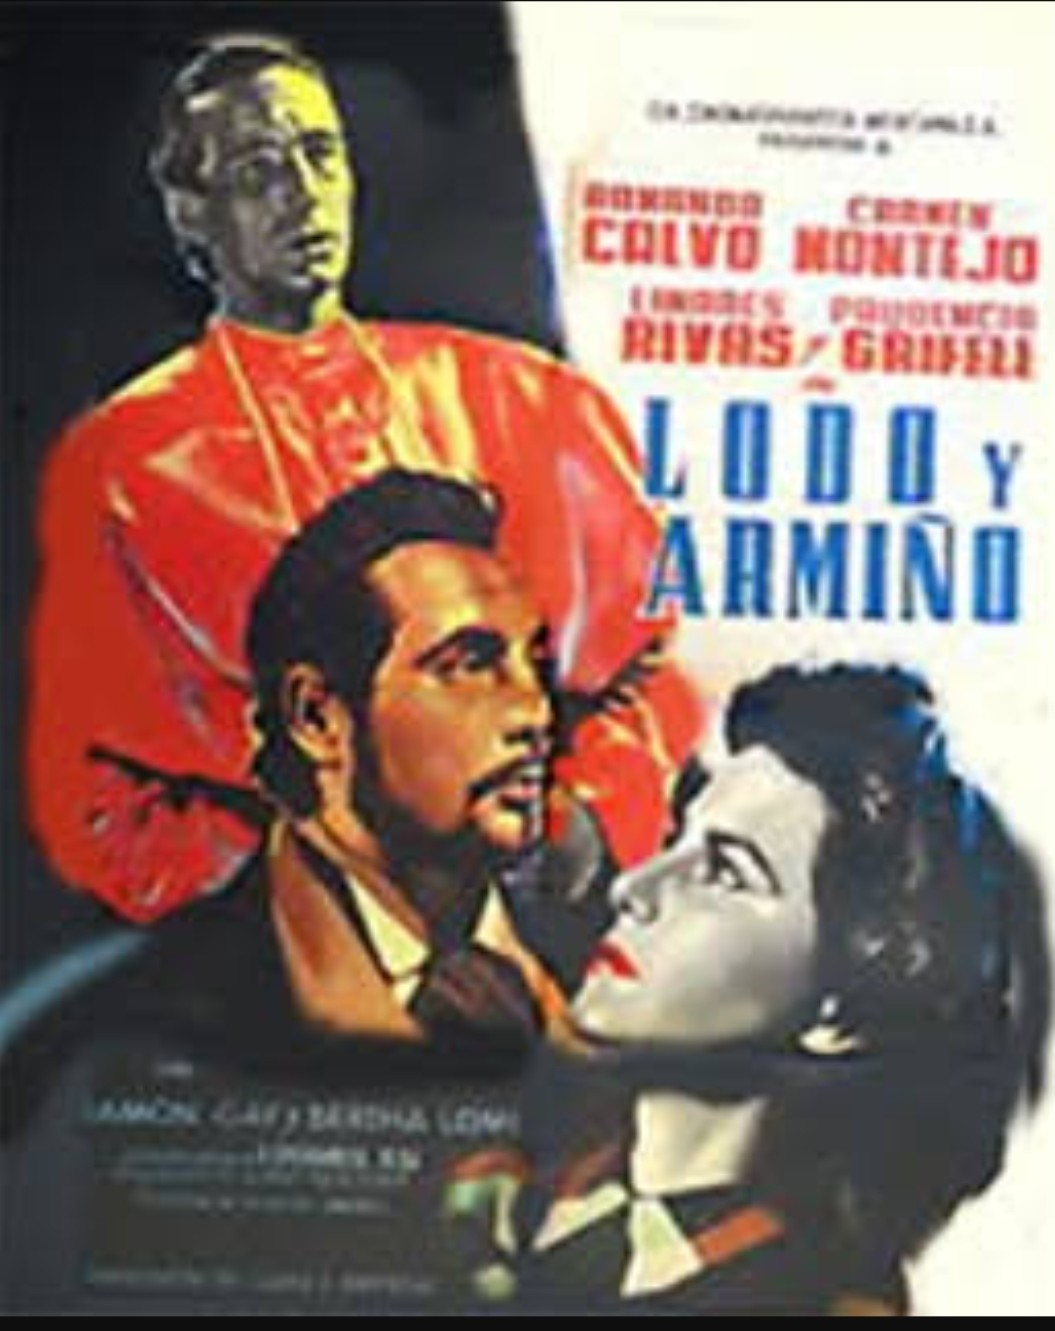 Lodo y armiño (1951)